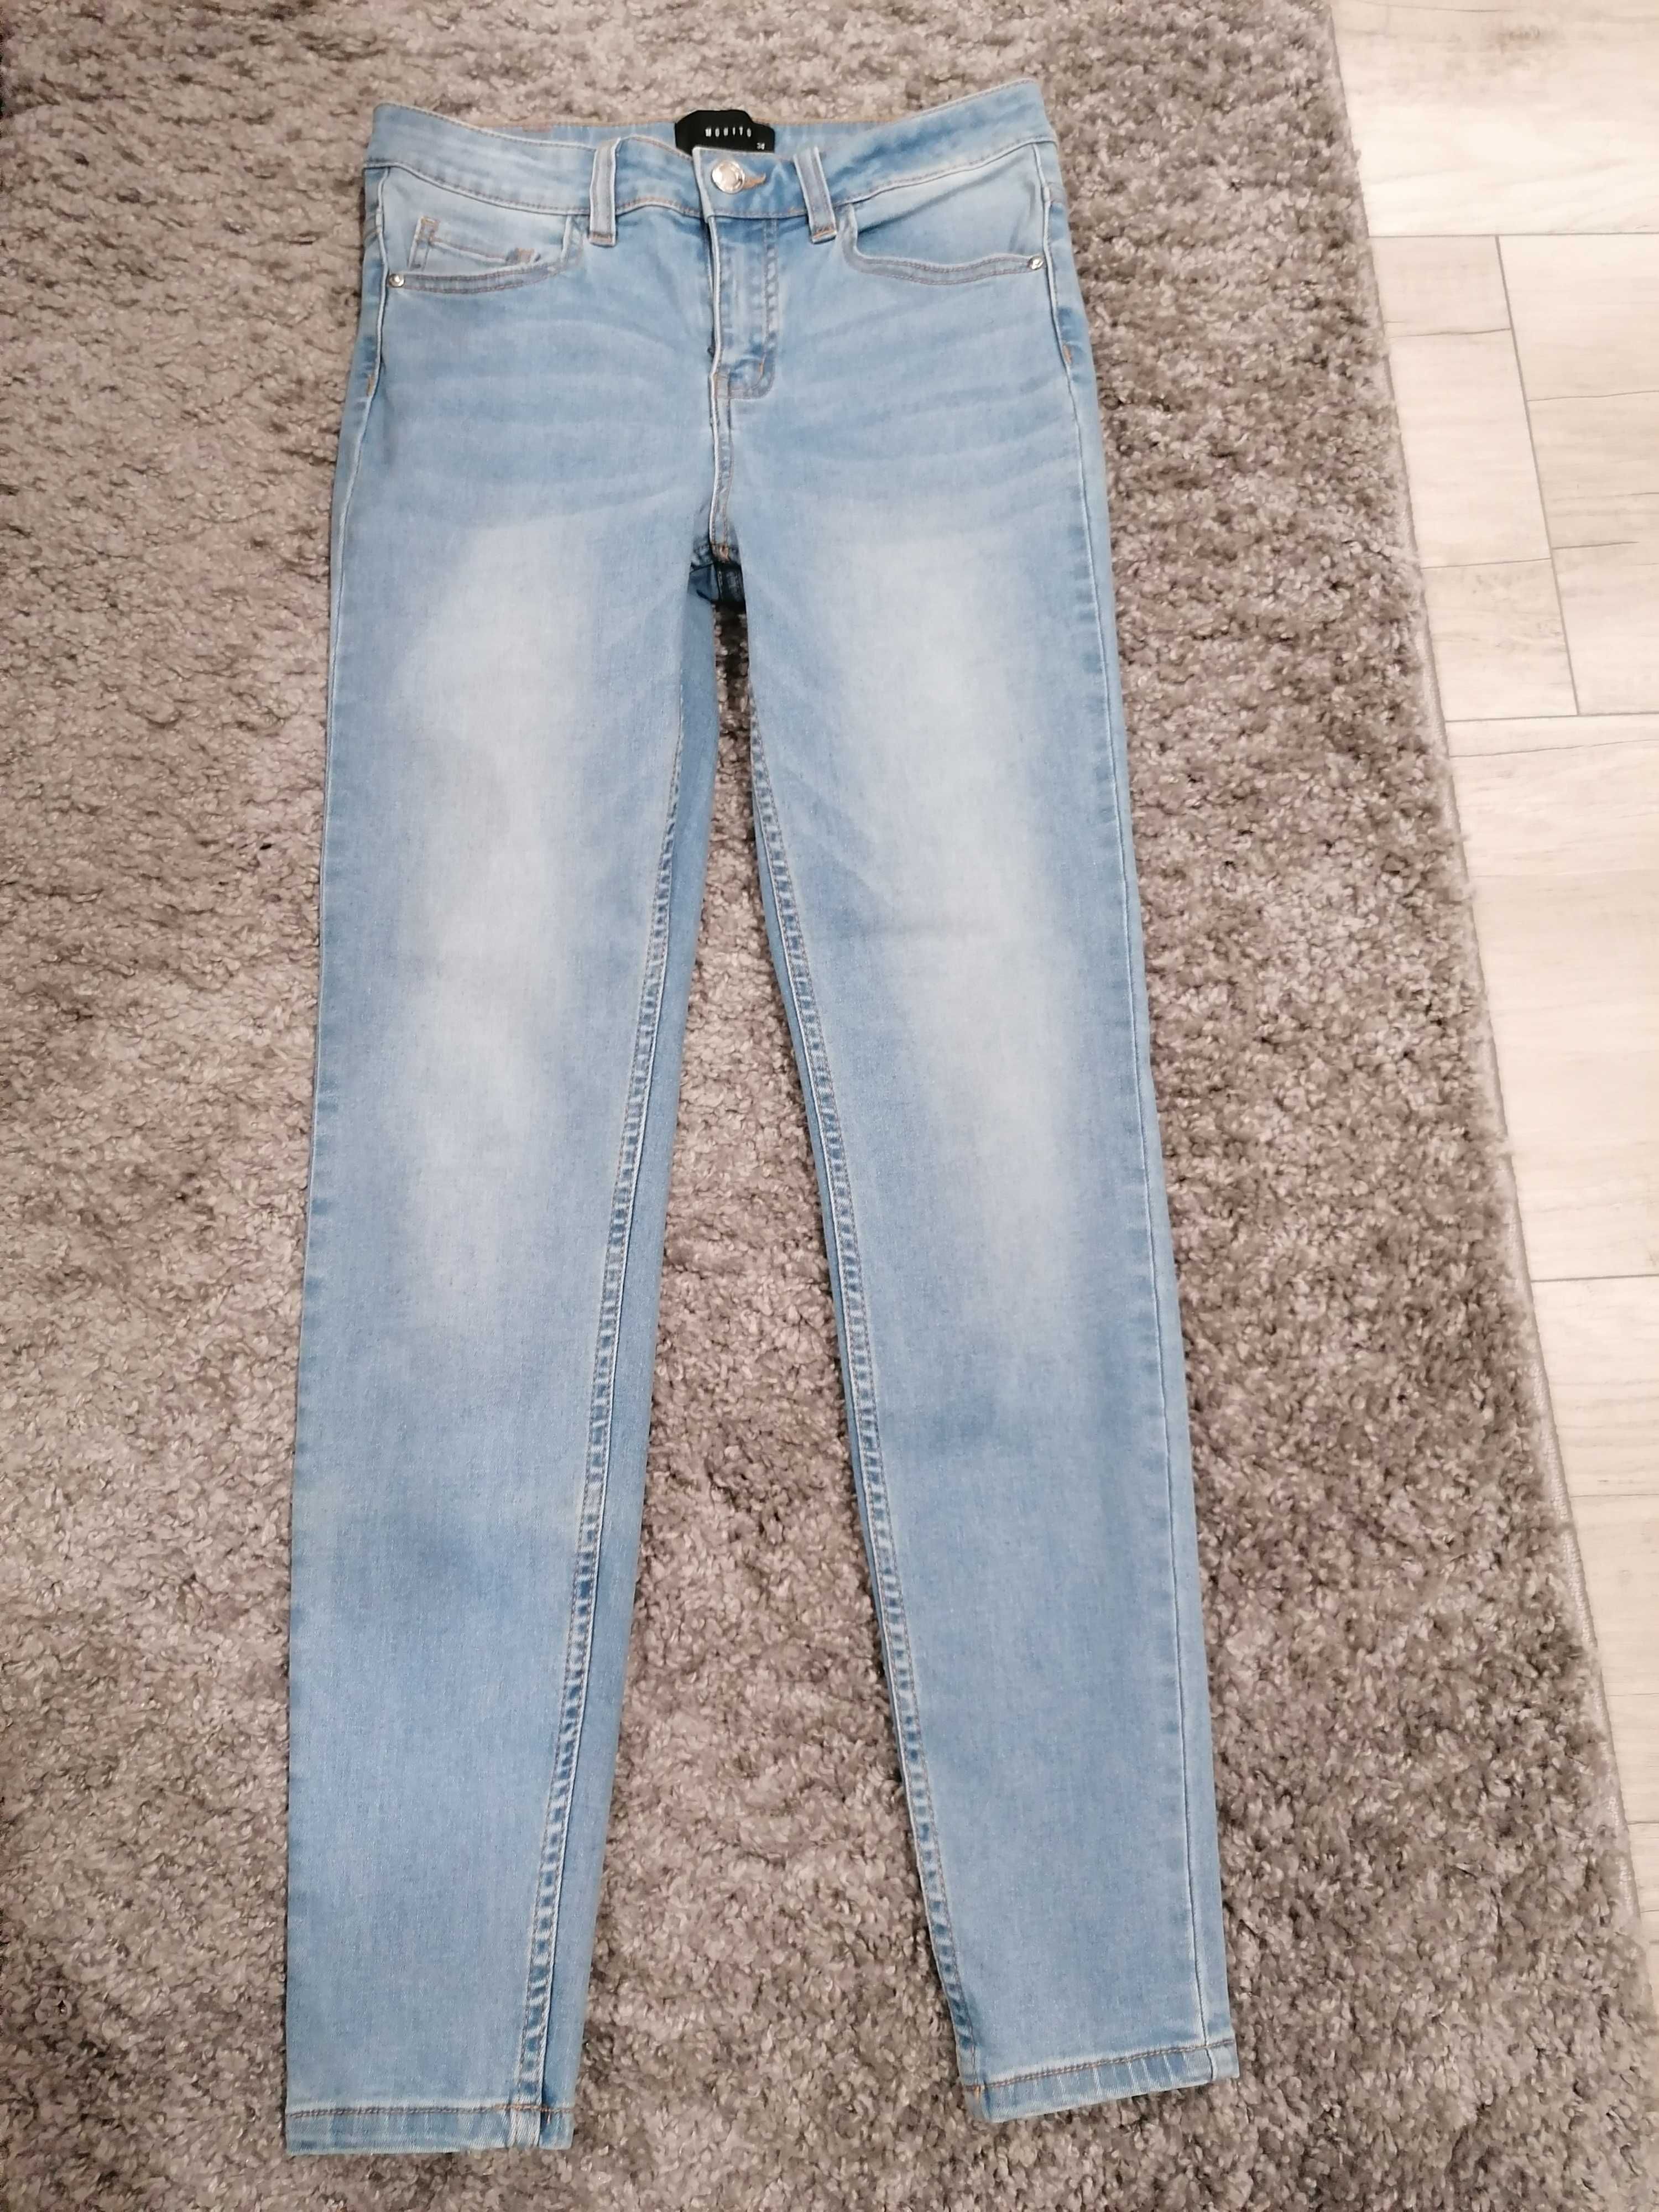 Spodnie jeansowe Mohito jeansy r.34 36 XS S jak nowe